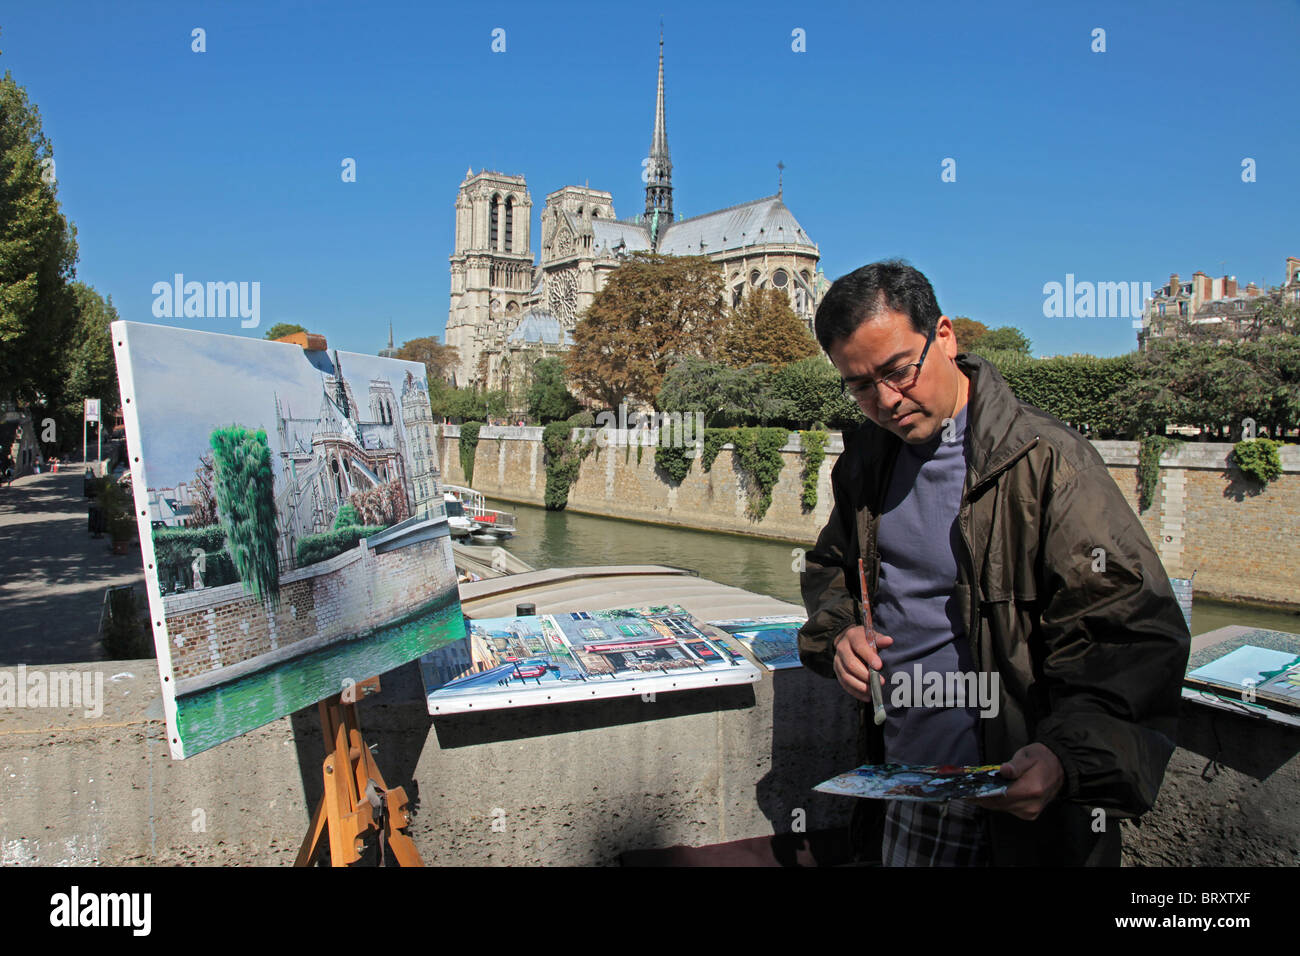 La peinture de l'ARTISTE LA CATHÉDRALE NOTRE DAME SUR UN QUAI DE SEINE, 4ème arrondissement, PARIS, FRANCE Banque D'Images